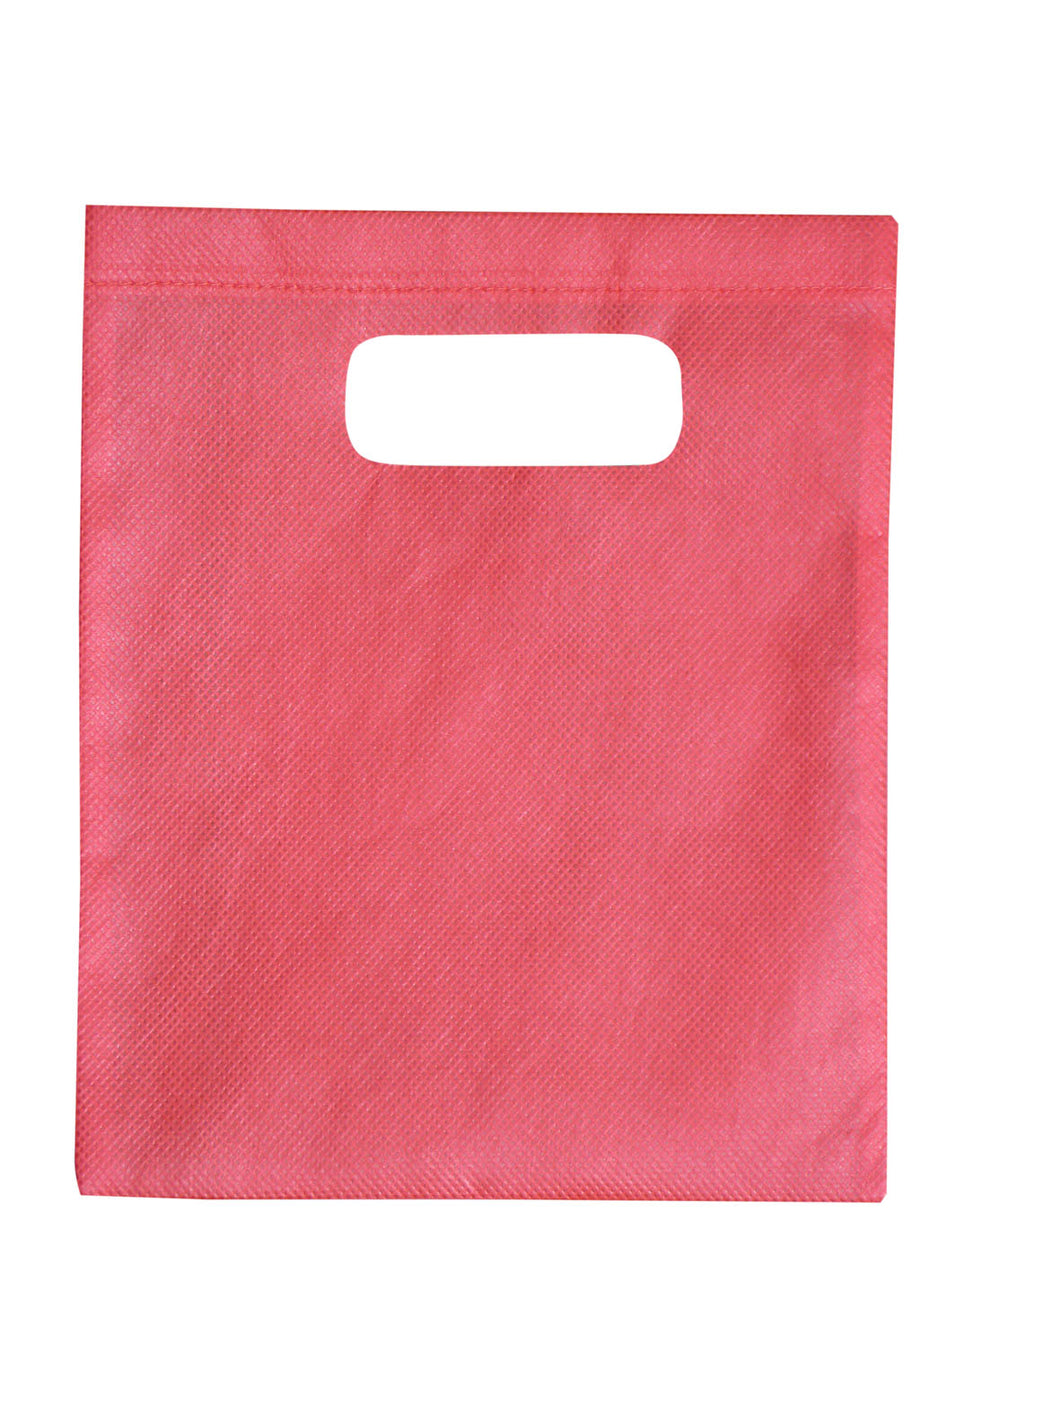 Non-Woven Gift Bag - Small